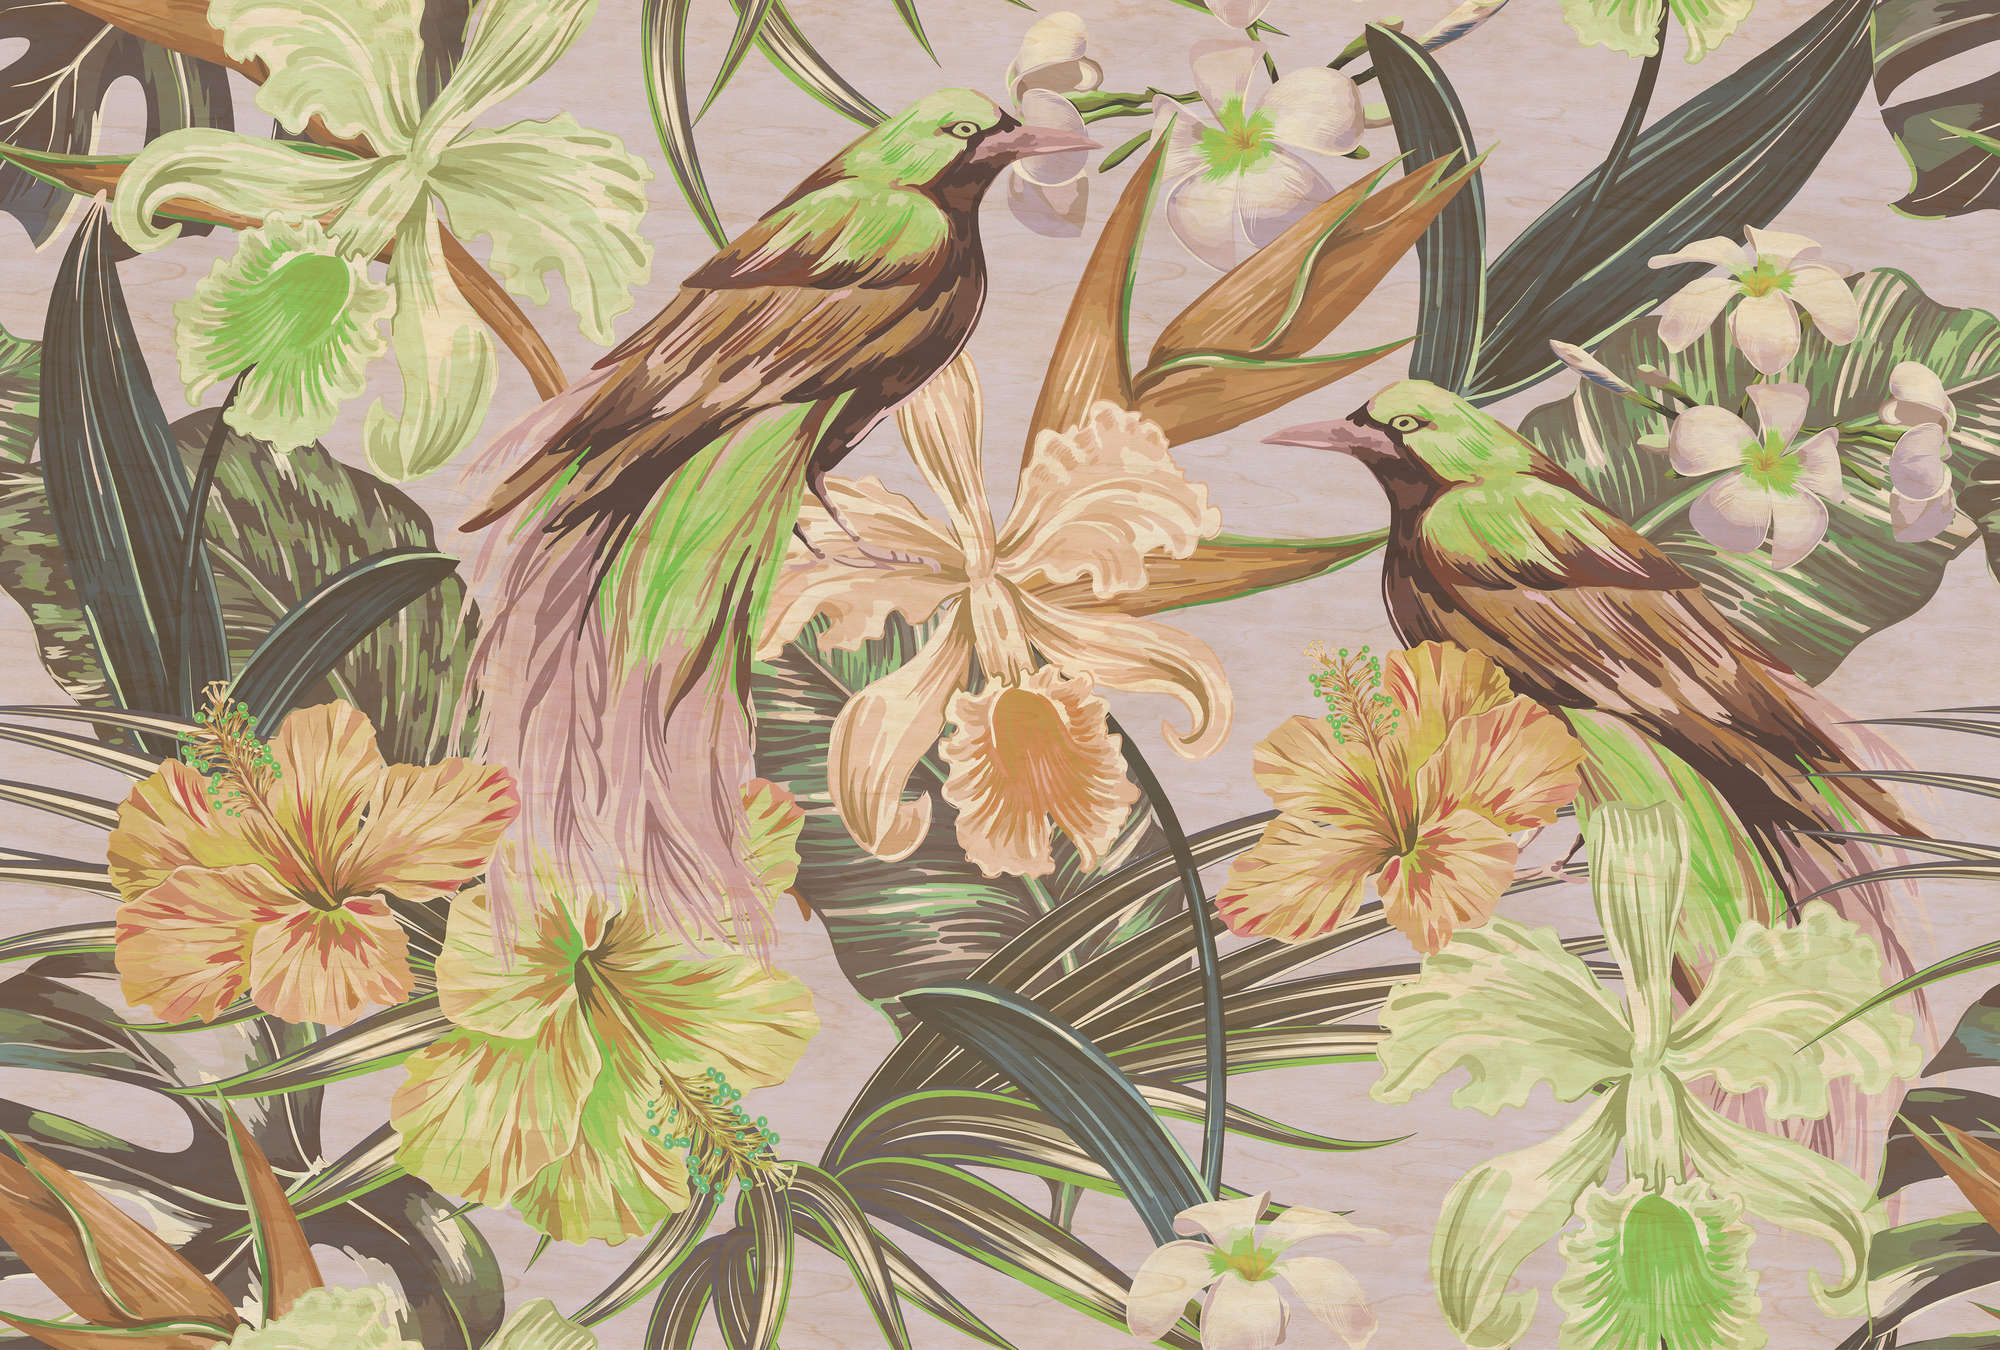             Exotische vogels 2 - Digital behang exotische vogels & planten- Kras textuur - Beige, Groen | Parel glad non-woven
        